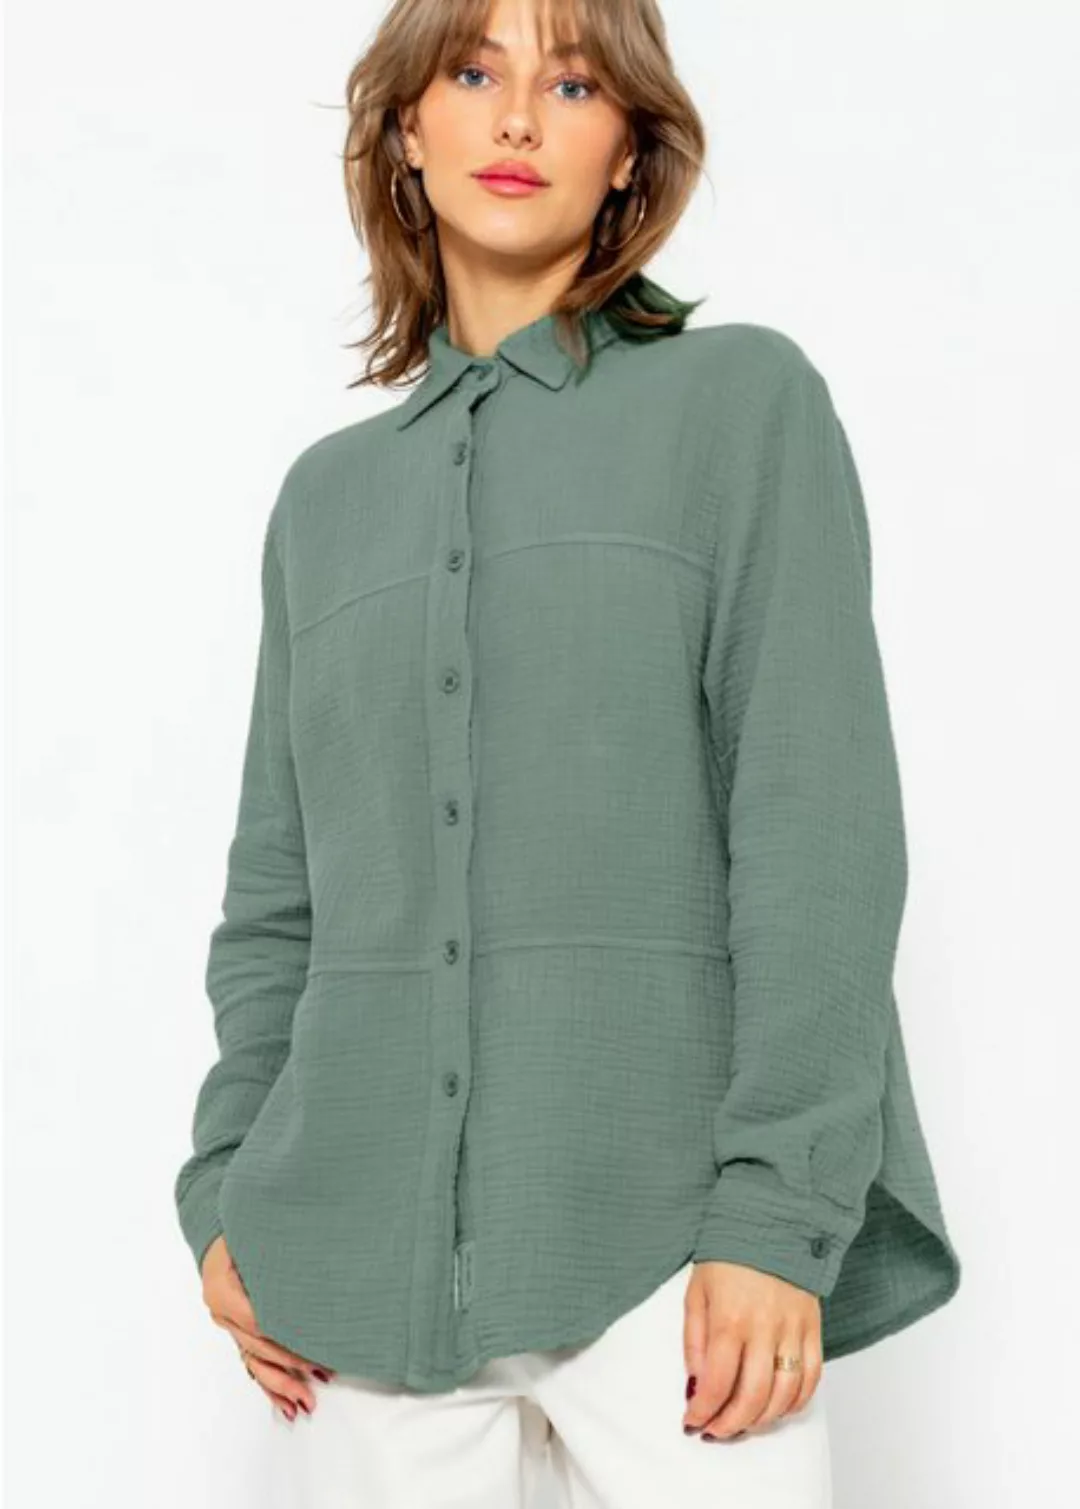 SASSYCLASSY Longbluse Musselin Bluse mit Ziernähten Baumwoll Bluse mit Patc günstig online kaufen